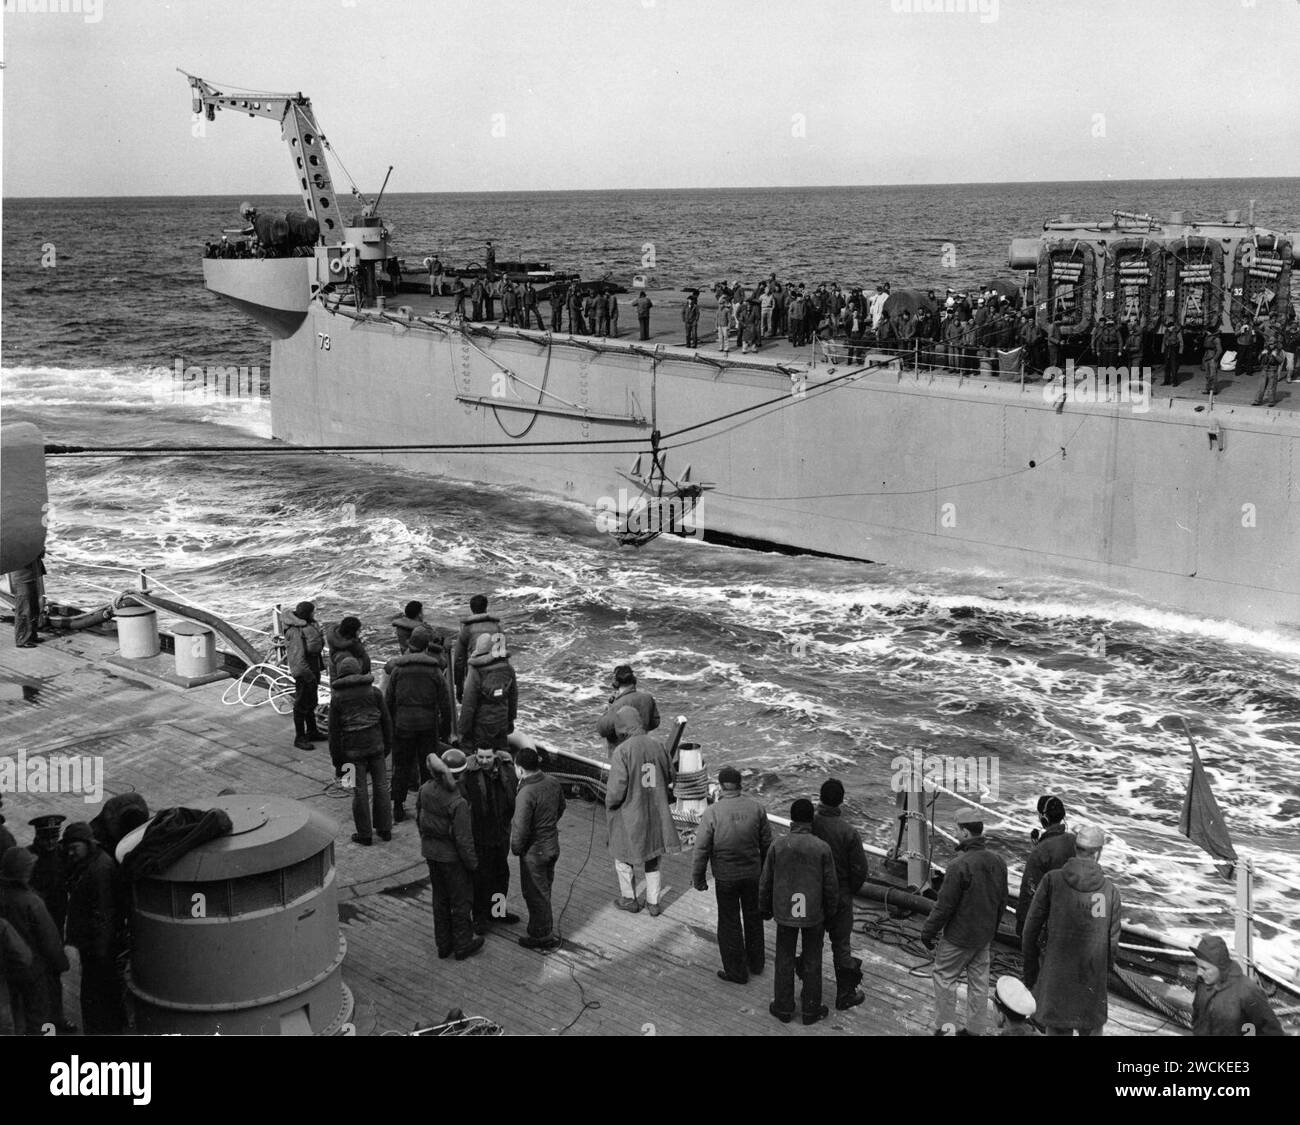 Un soldat blessé de la République de Corée transféré par Highline de l'USS St. Paul au navire amiral de la 7e flotte, USS Wisconsin dans les eaux coréennes le 11 mars 1952 - 09-7951-12. Banque D'Images